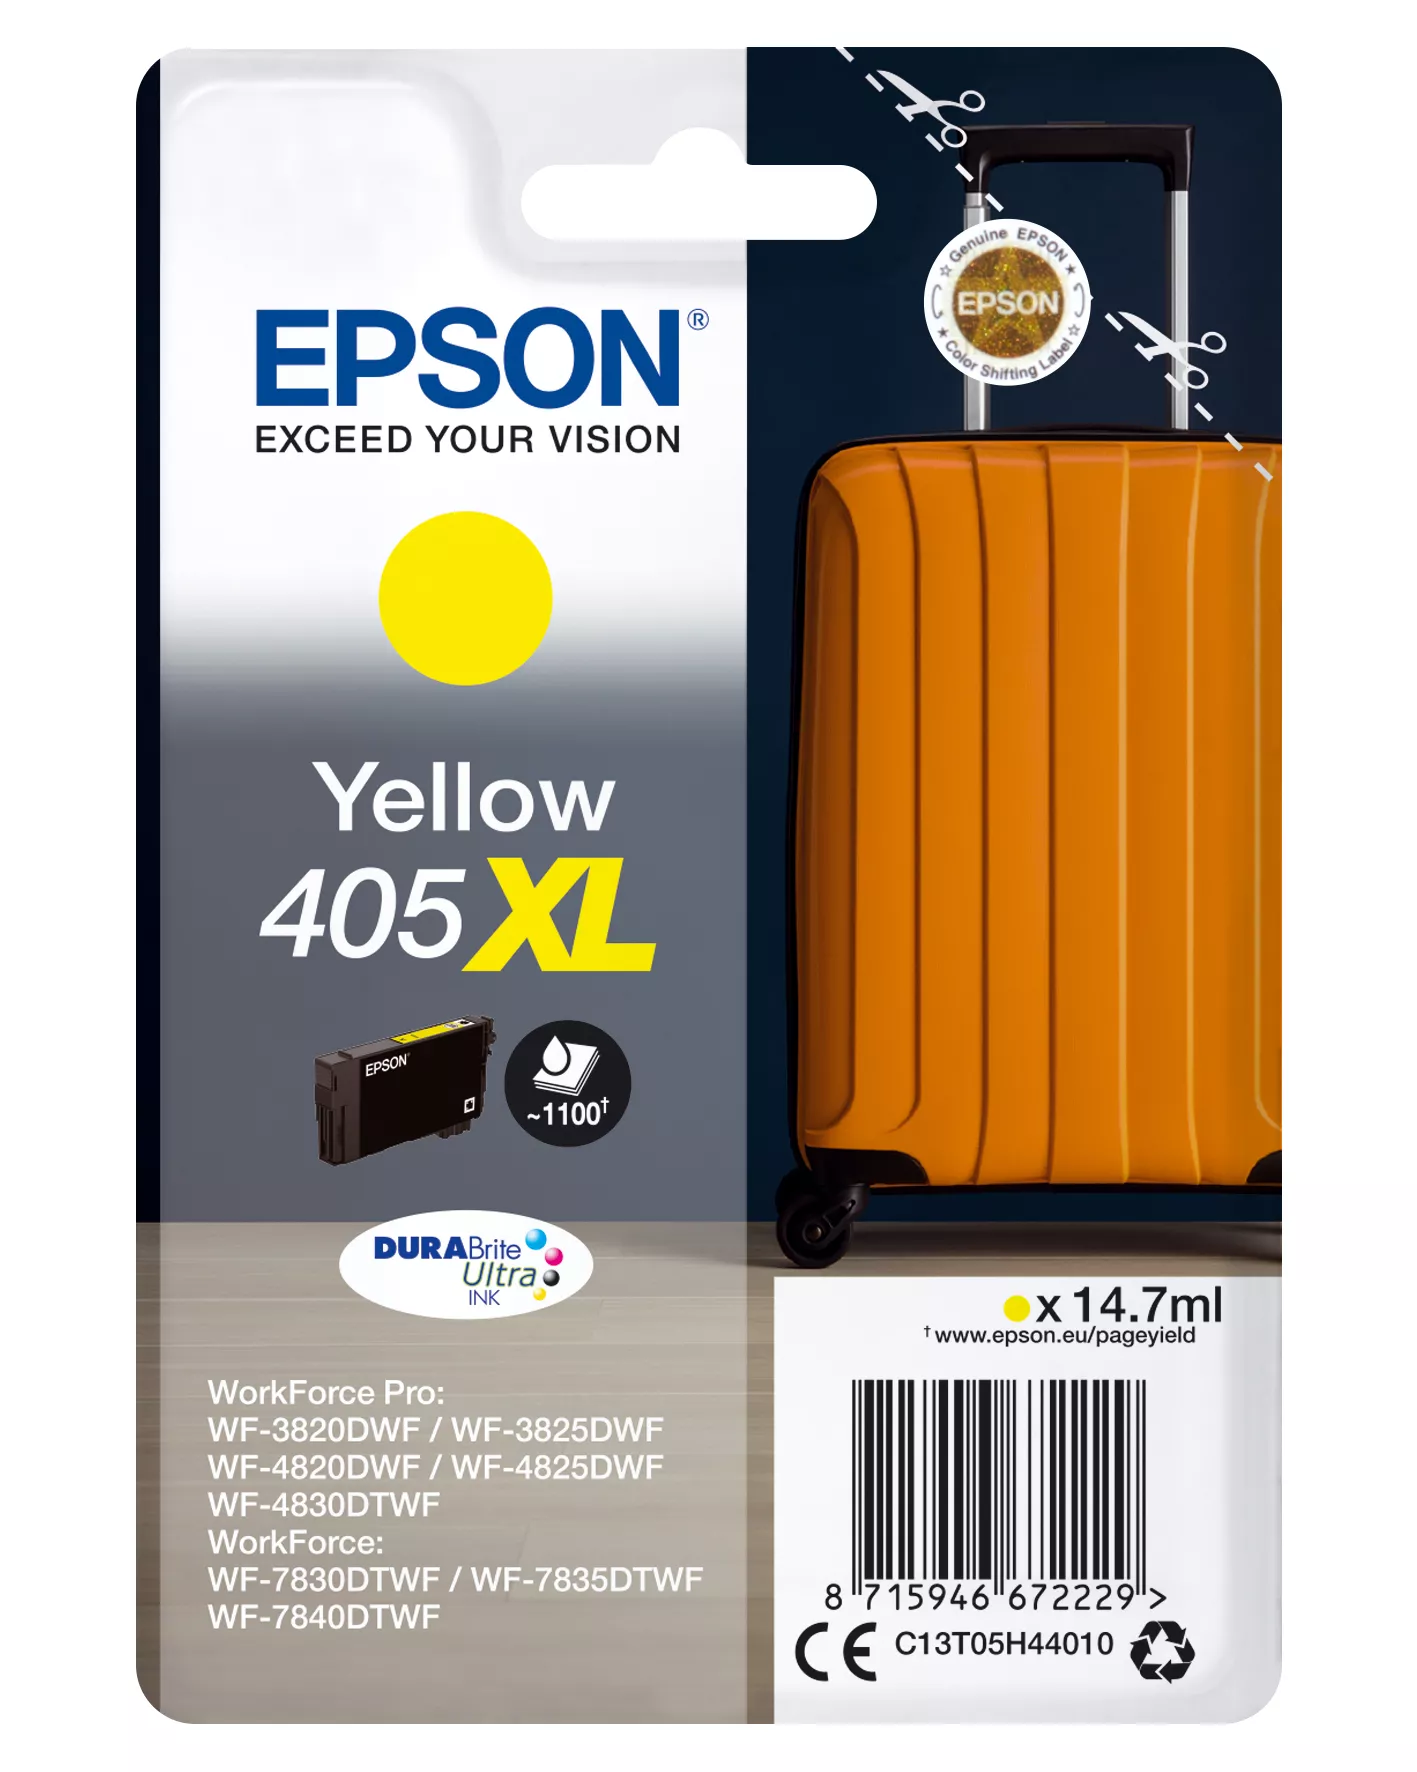 Achat Epson Singlepack Yellow 405XL DURABrite Ultra Ink et autres produits de la marque Epson